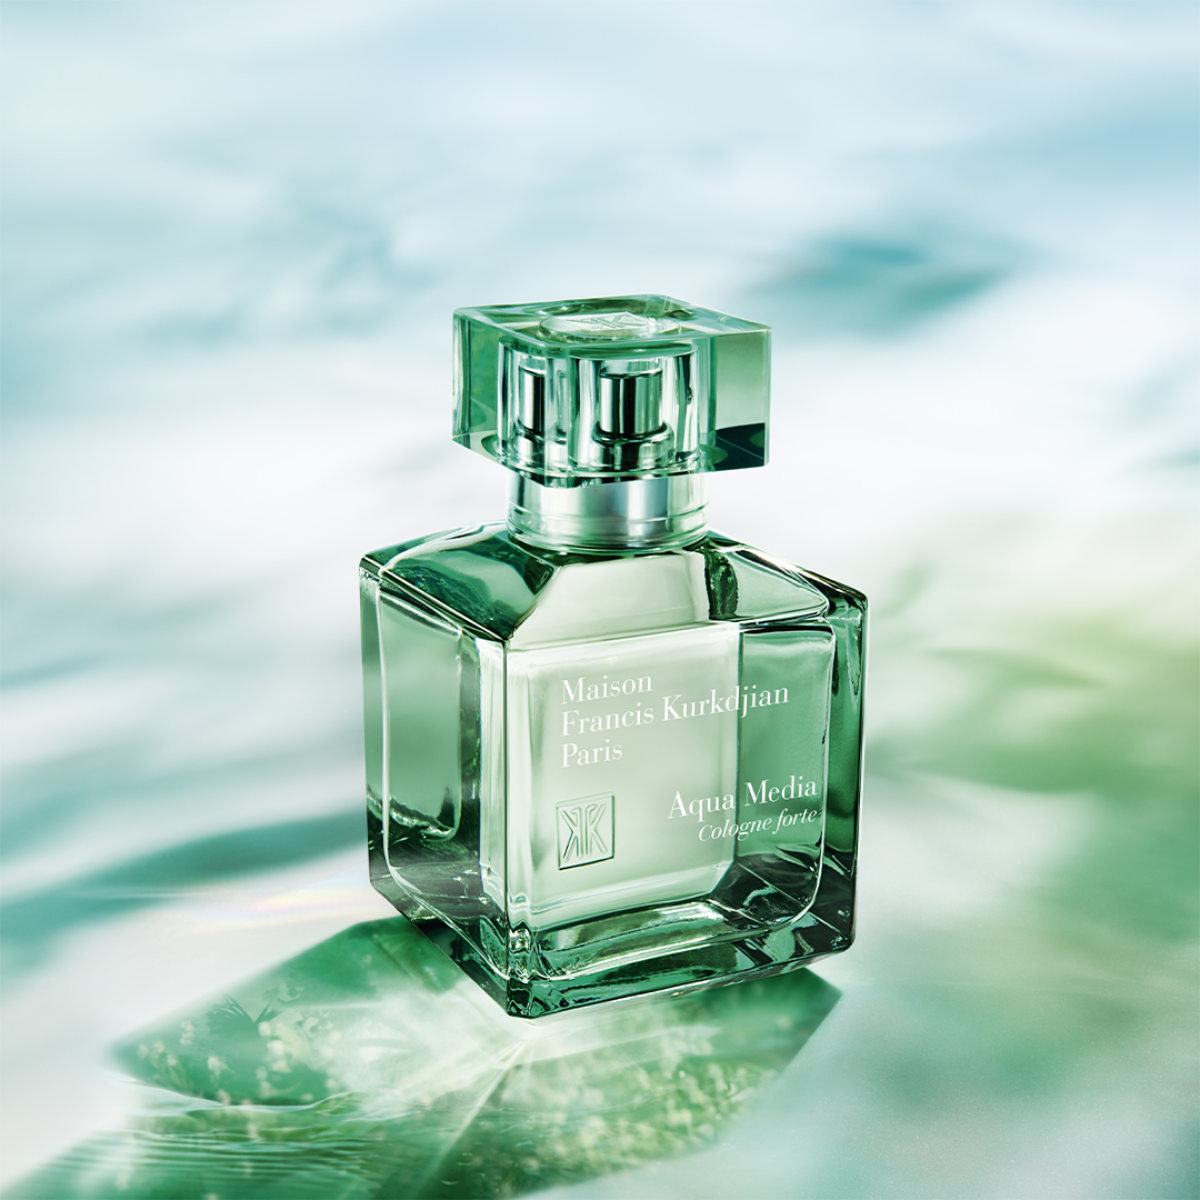 Francis Kurkdjian Introduces His New Eau De Parfum: Aqua Media Cologne Forte